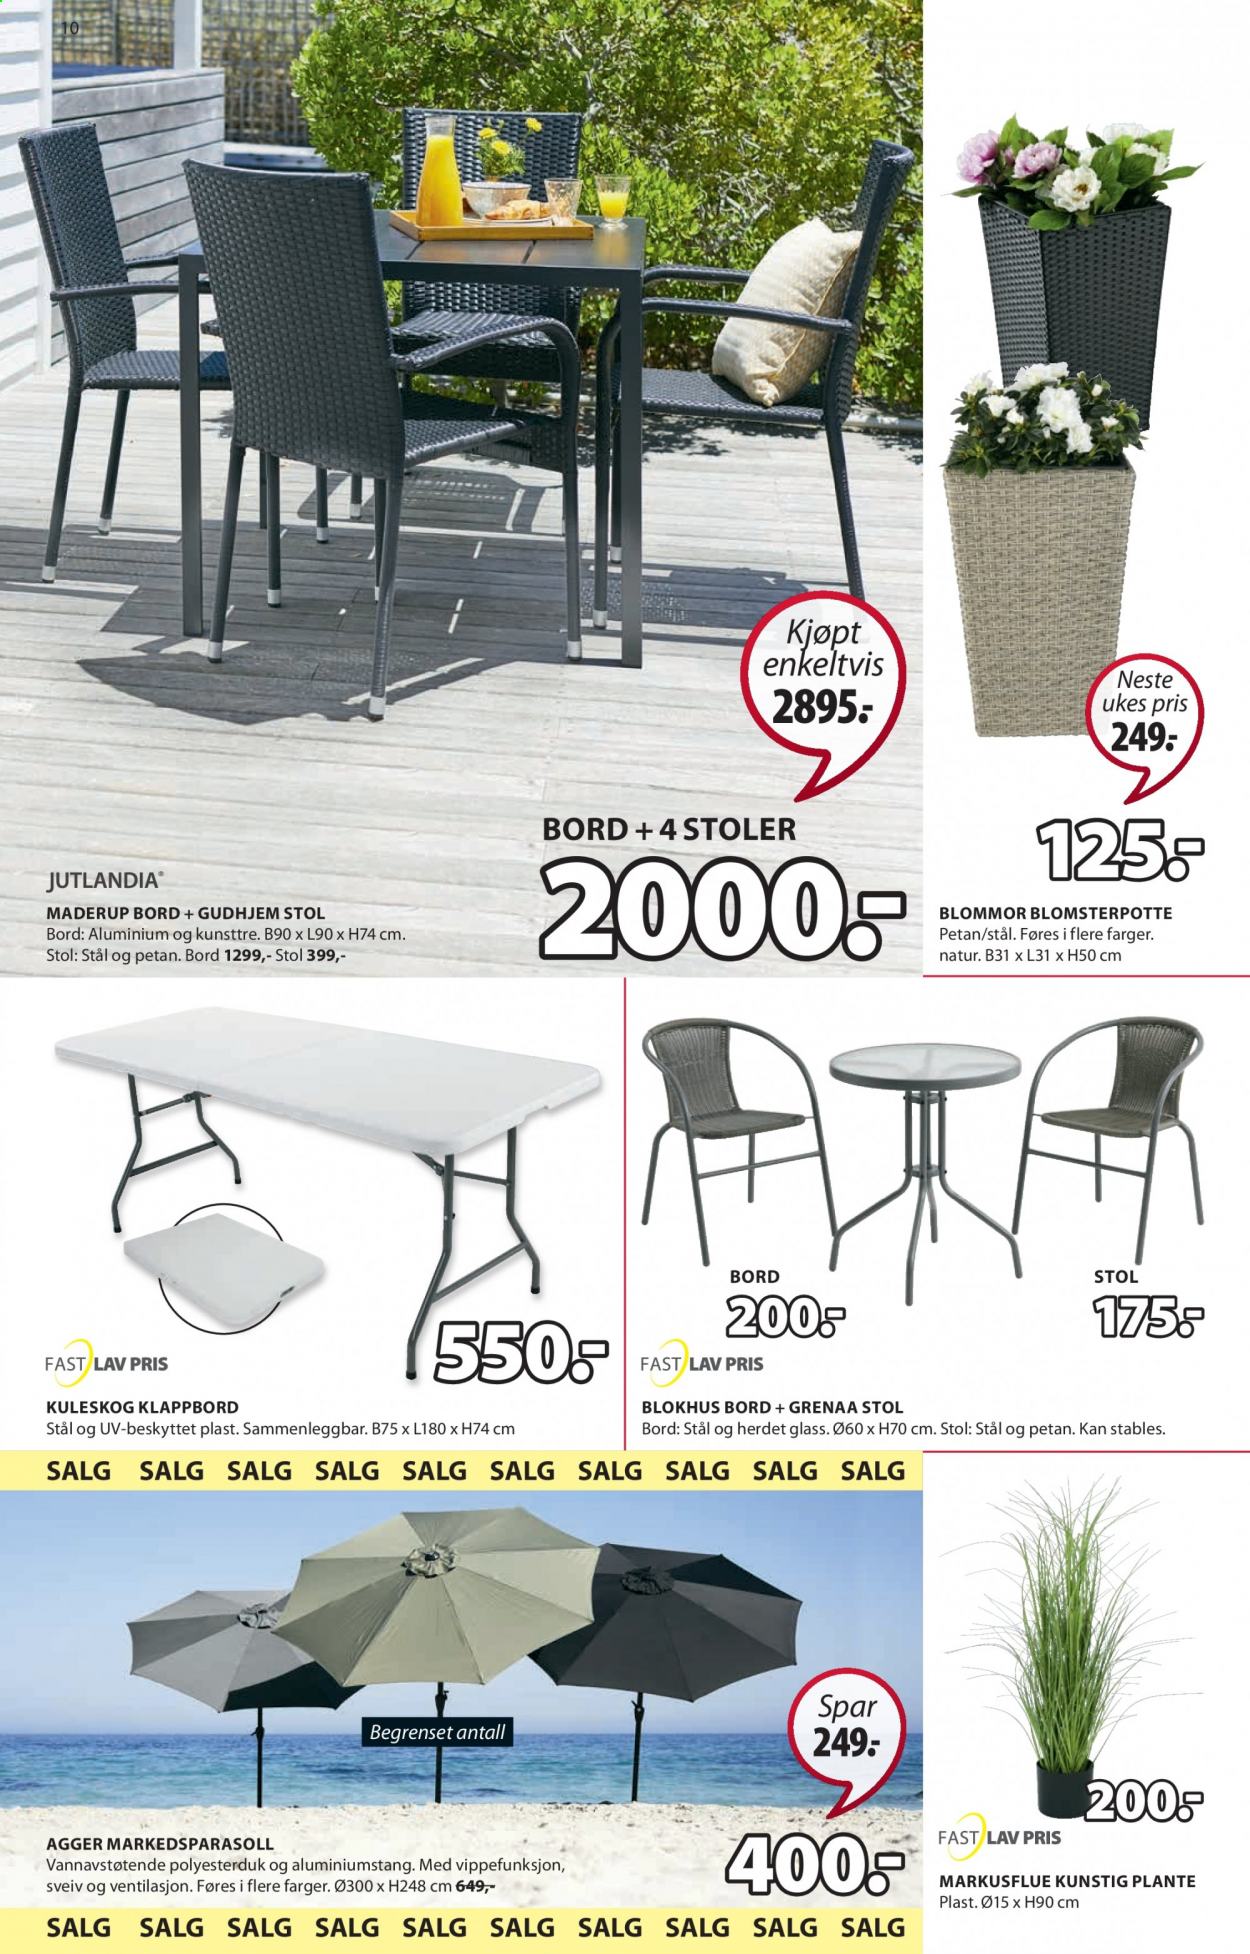 thumbnail - Kundeavis JYSK - 12.7.2021 - 17.7.2021 - Produkter fra tilbudsaviser - bord, stol. Side 10.